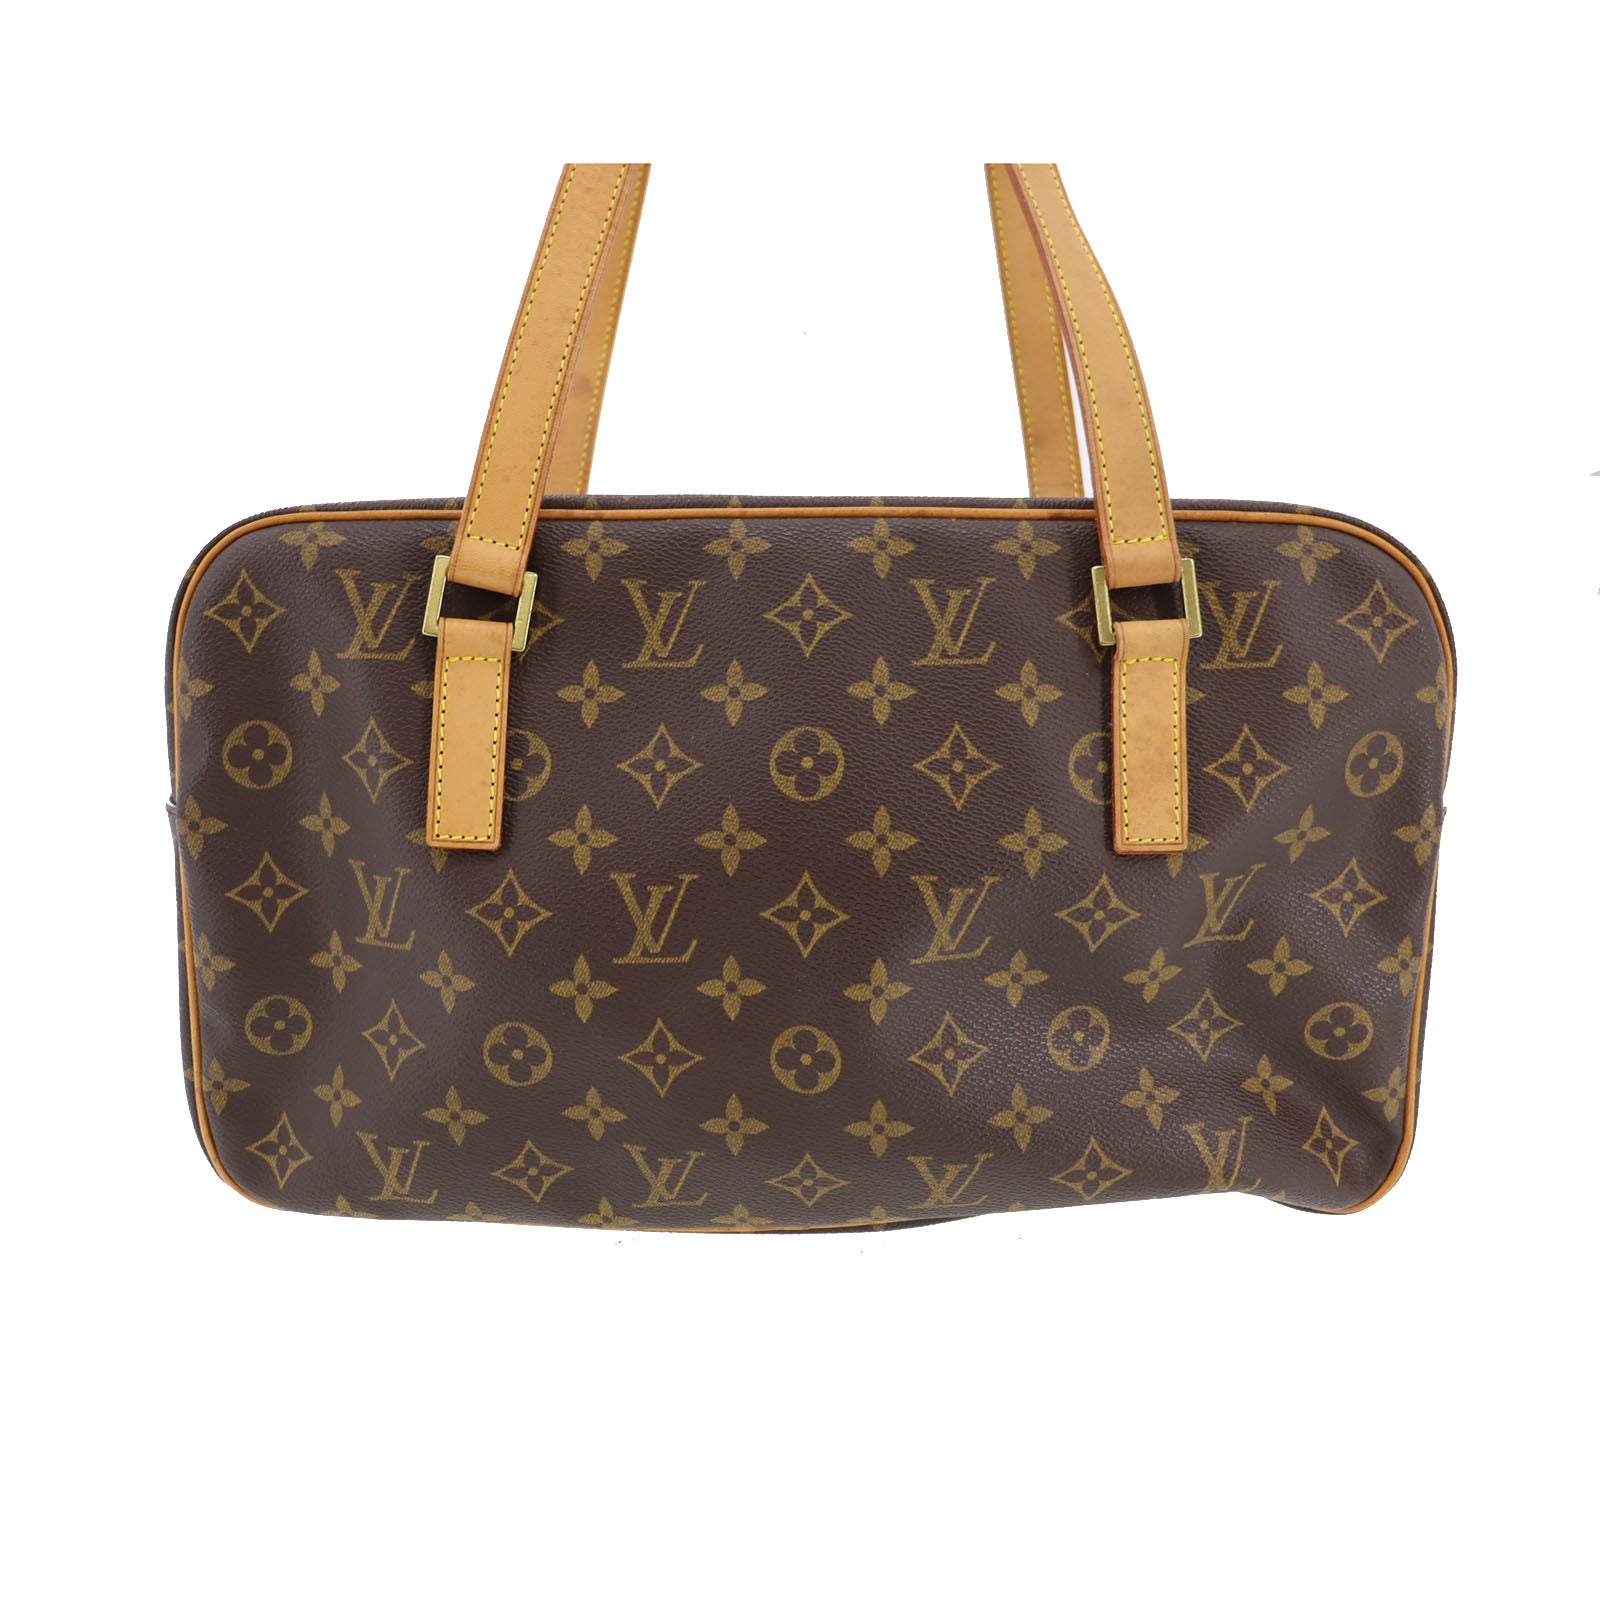 Shop for Louis Vuitton Monogram Canvas Leather Cite MM Shoulder